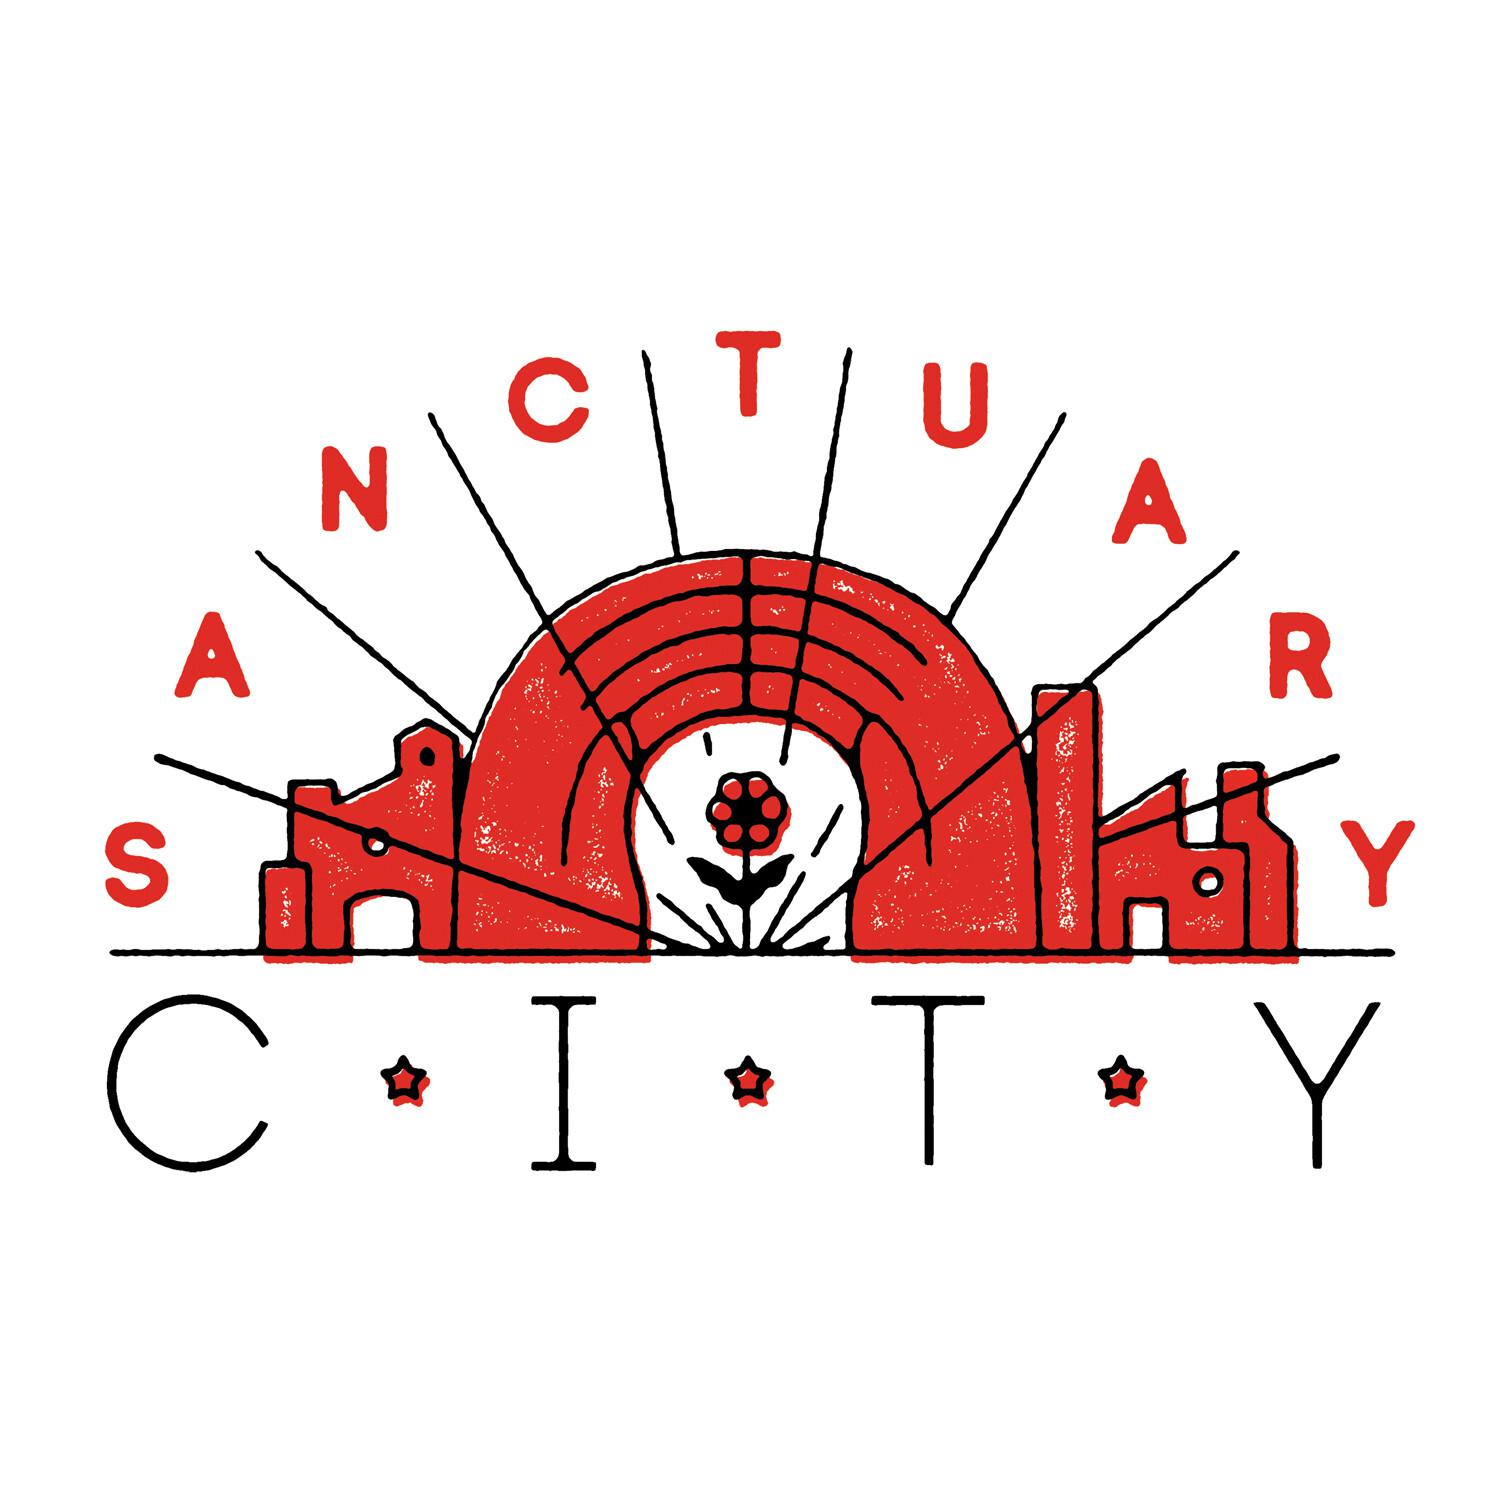 Sanctuary City